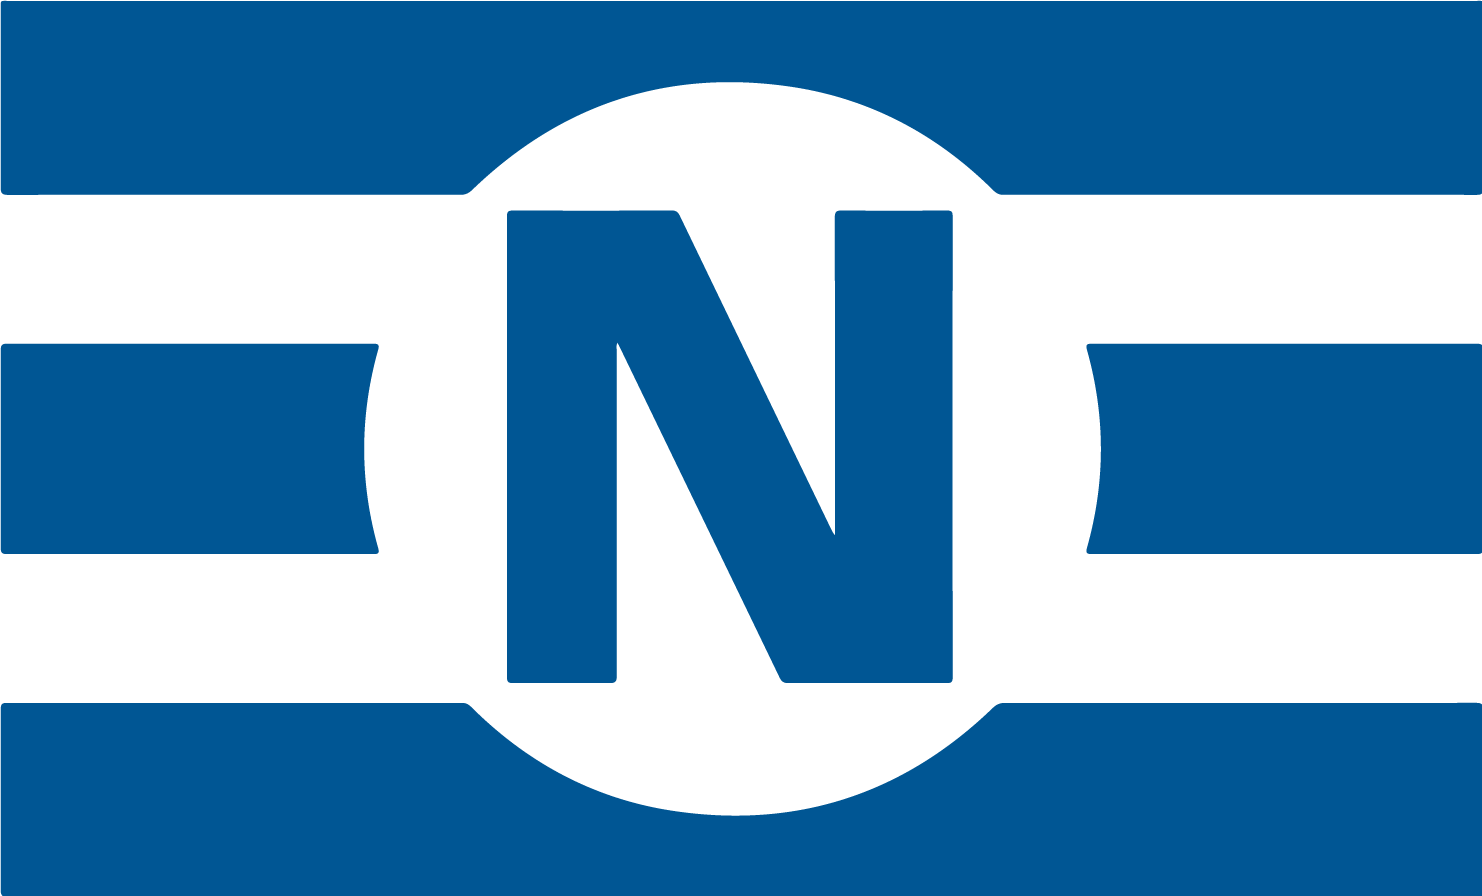 Navios Maritime Holdings logo (transparent PNG)